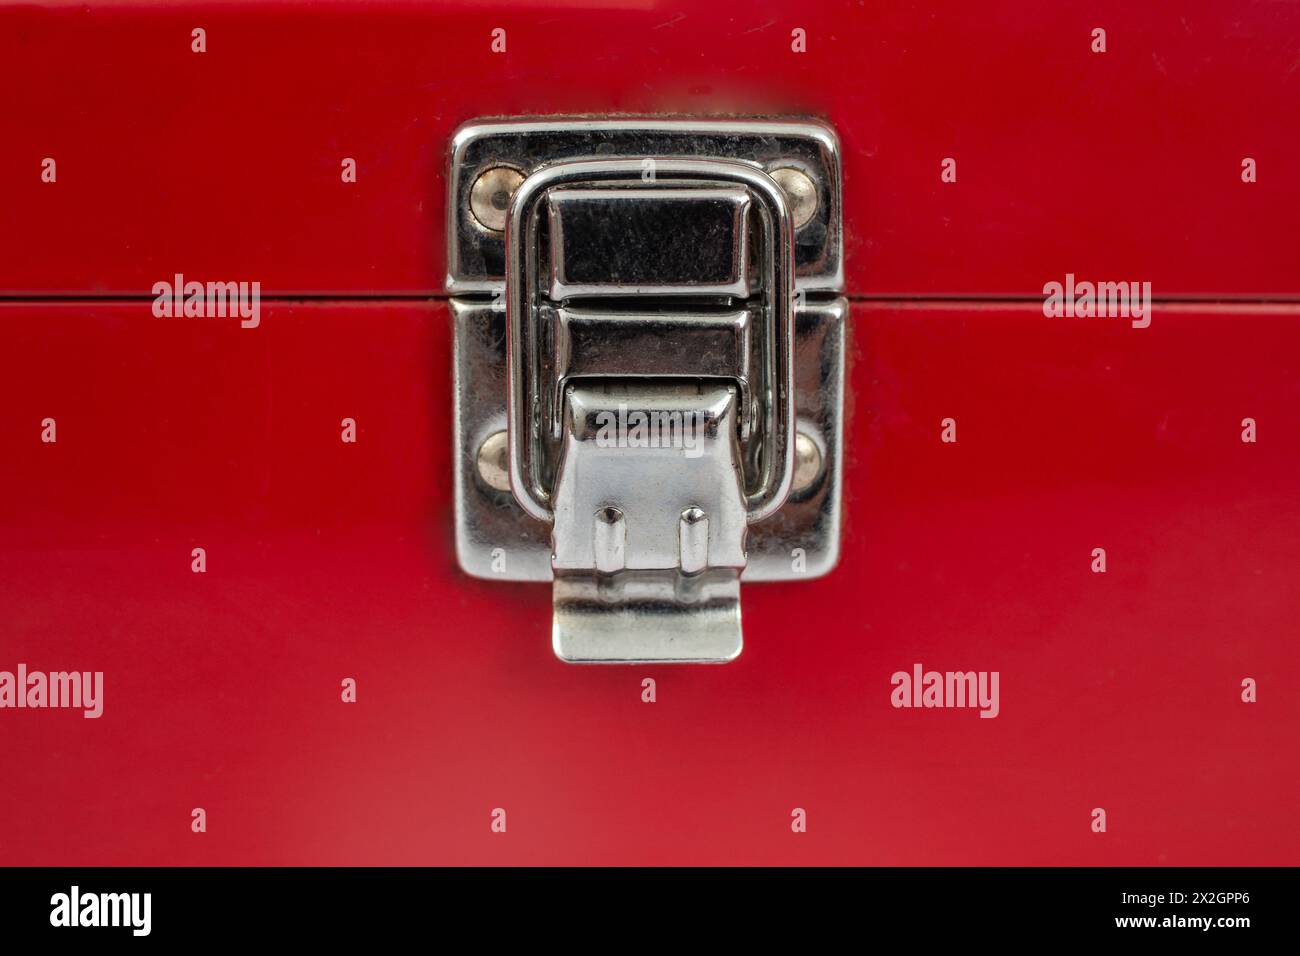 Blocco a scatto in acciaio inox su una custodia metallica rossa, coperchio chiuso di una scatola verniciata di rosso Foto Stock